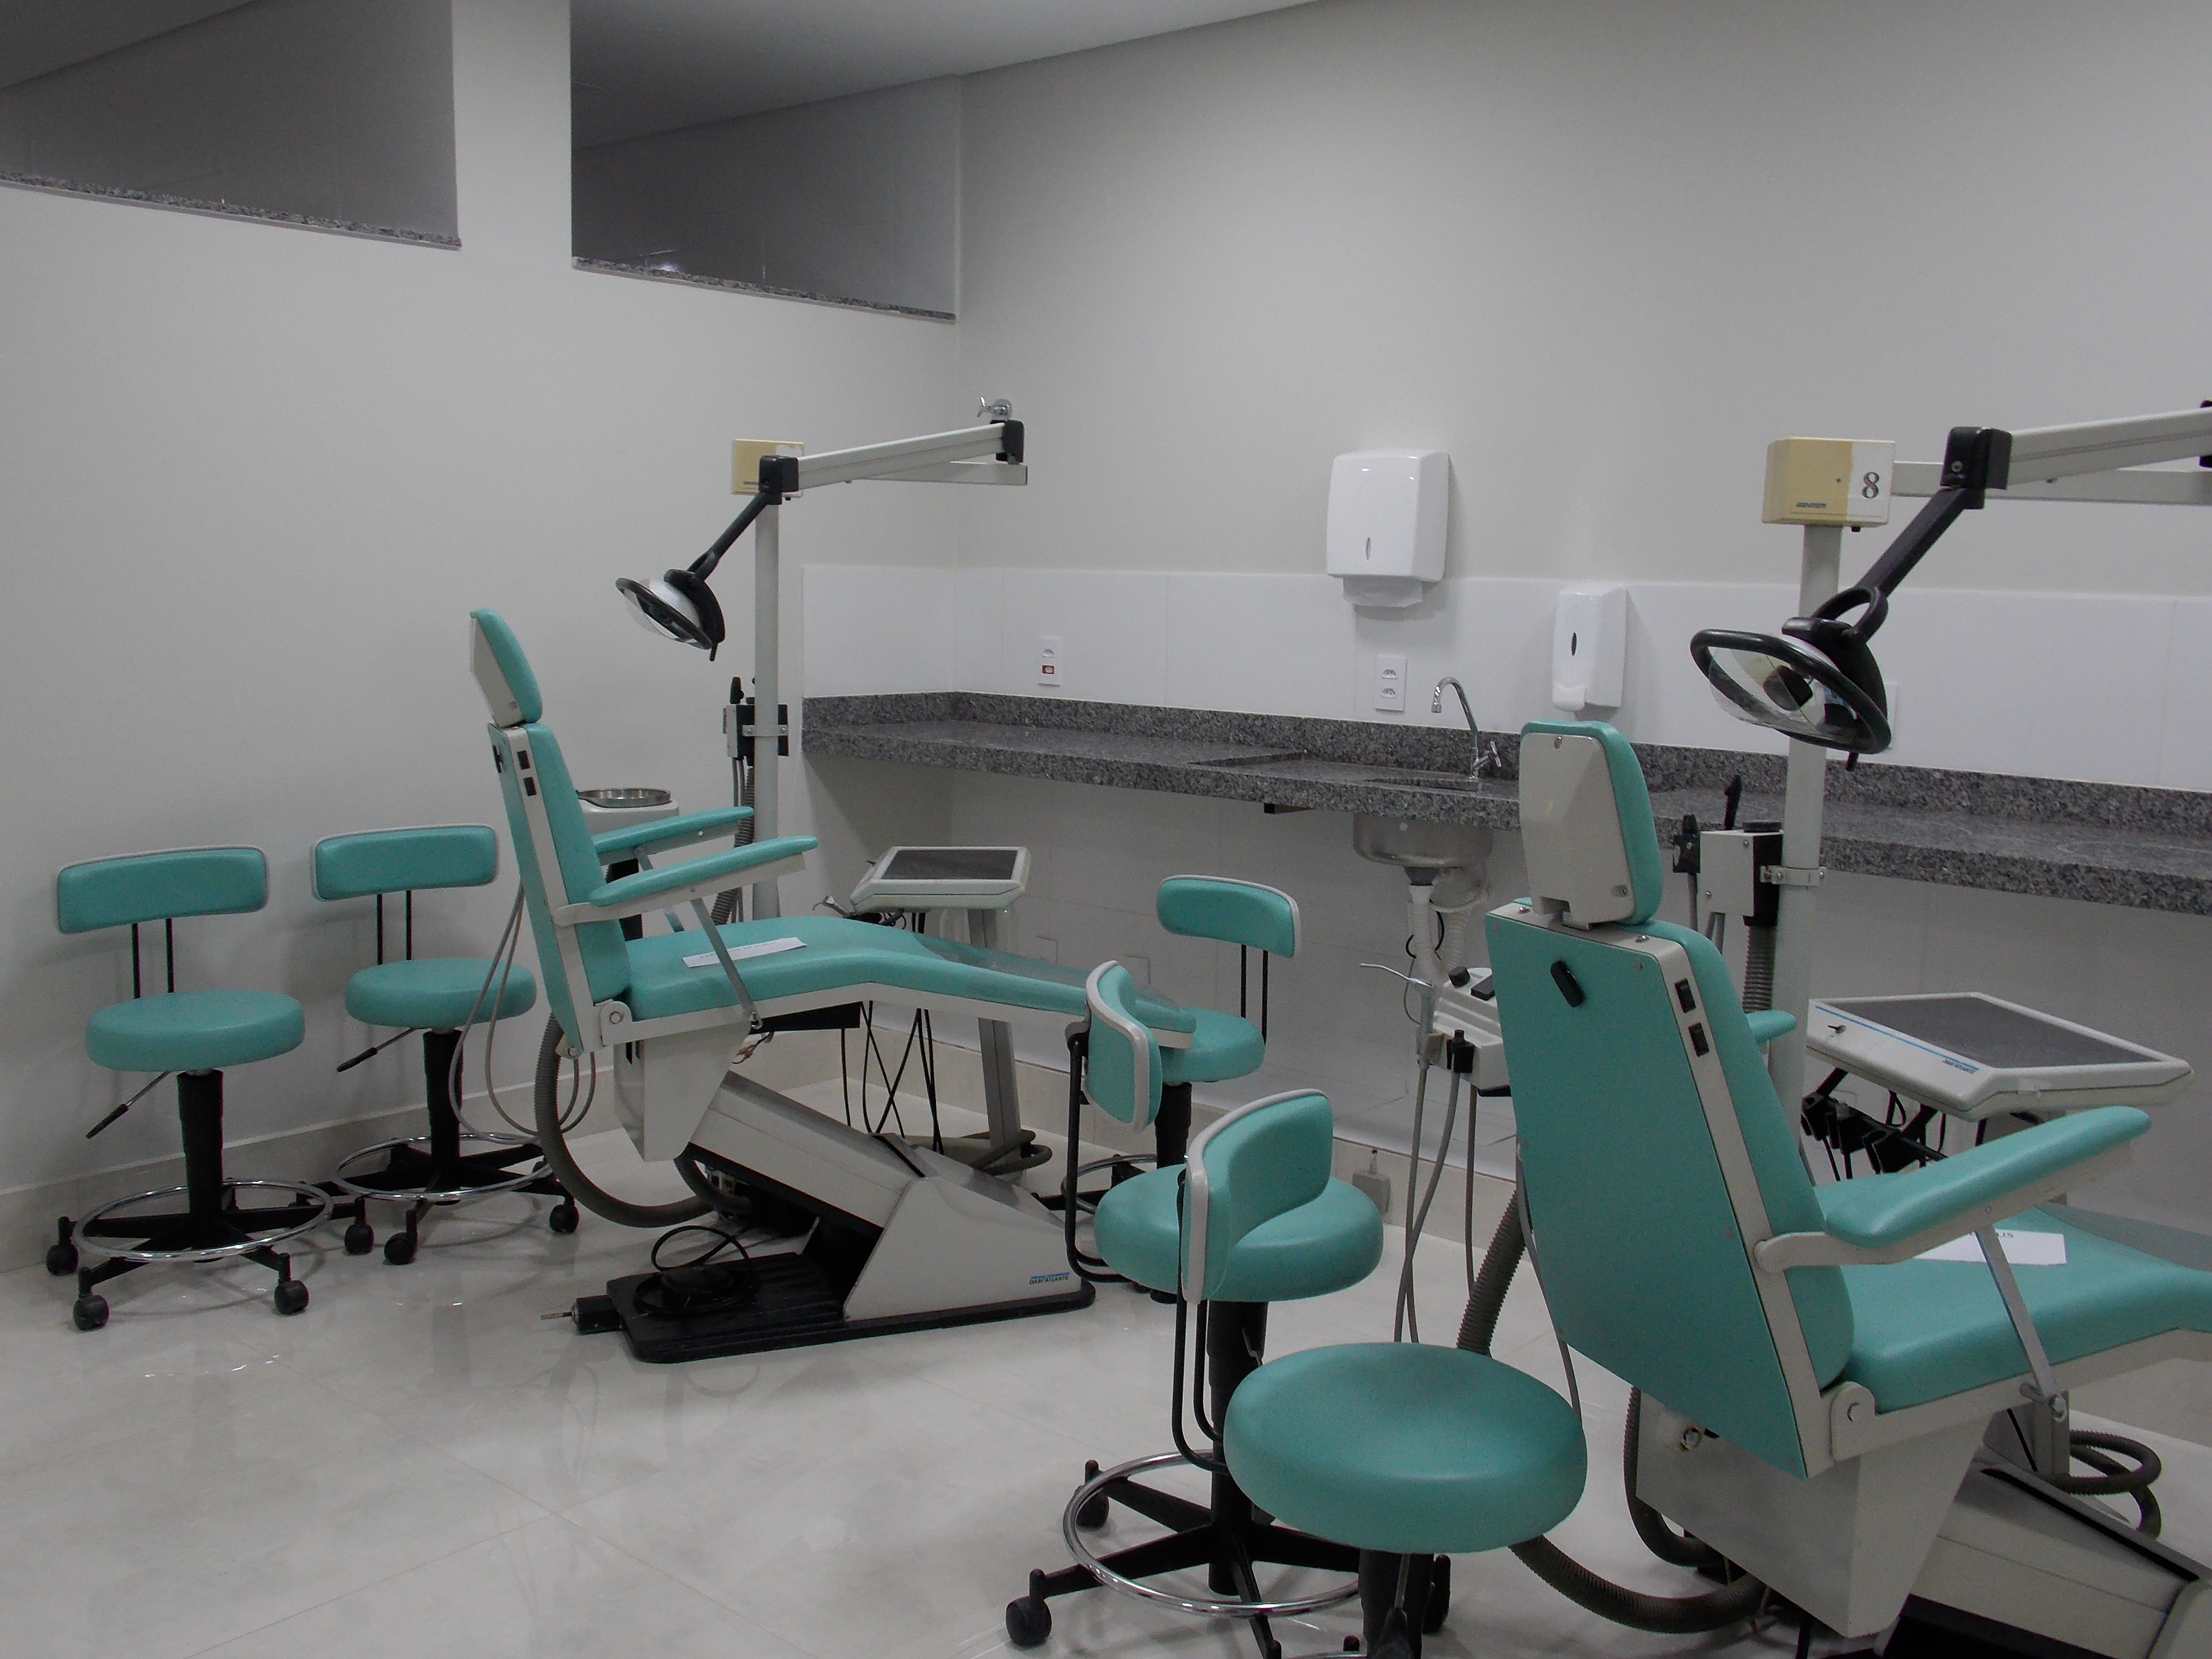 A nova clínica poderá atender até 8 pessoas ao mesmo tempo (Foto: Divulgação)